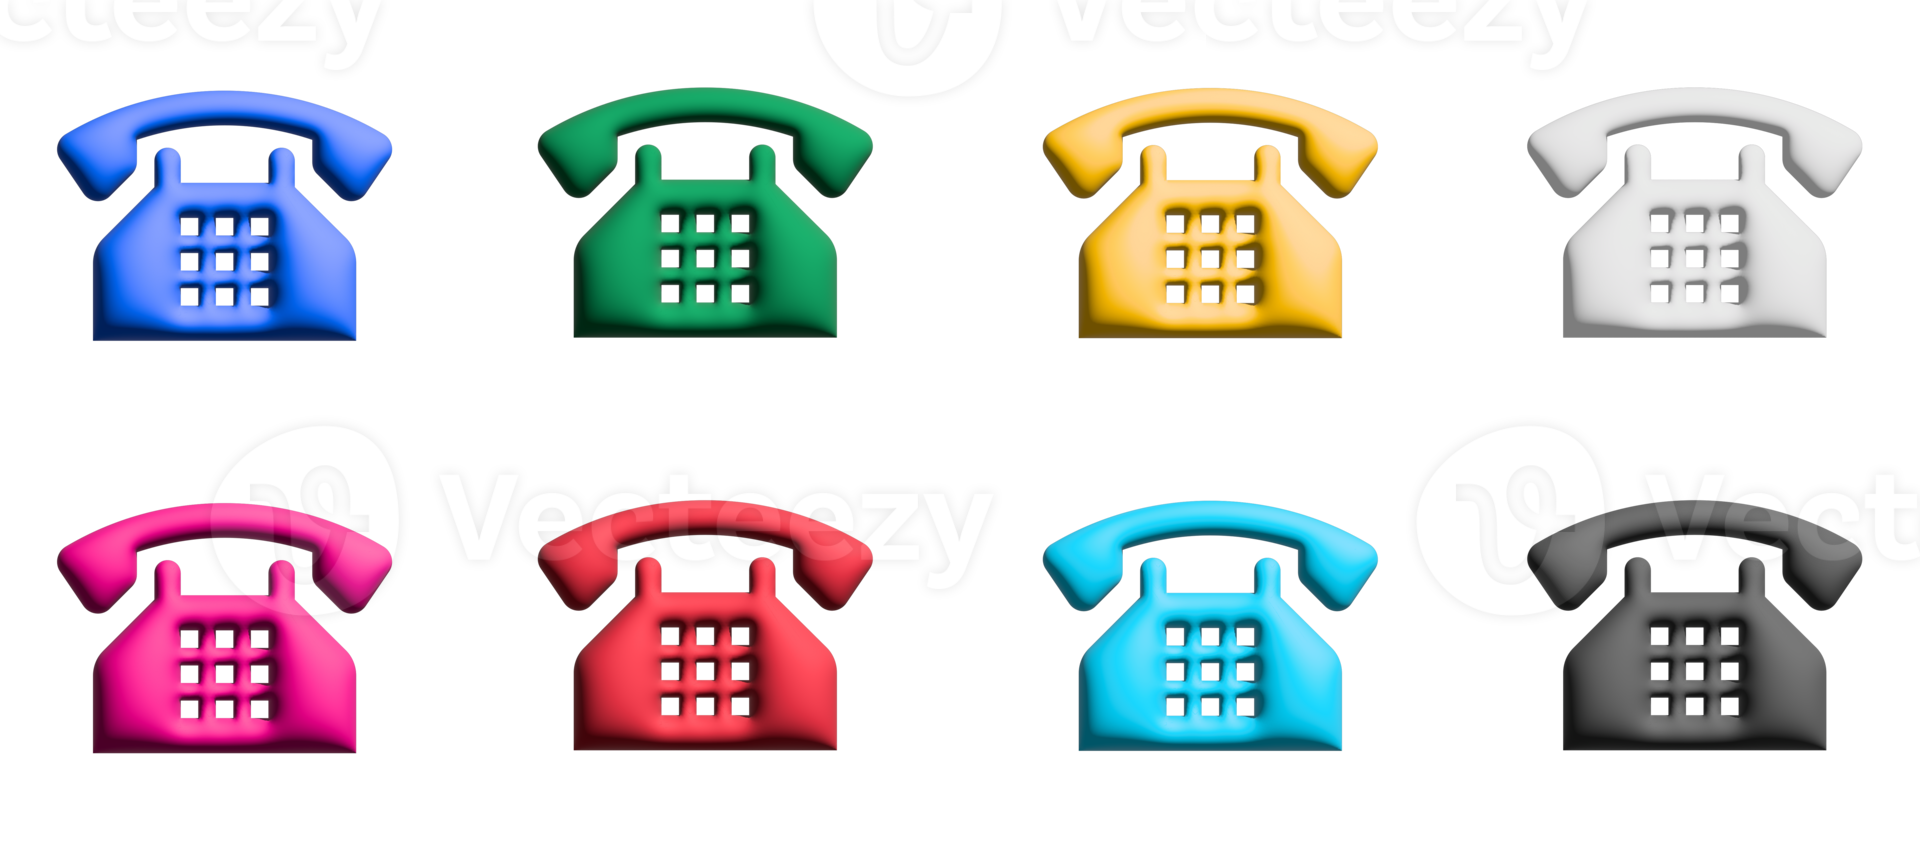 conjunto de iconos de teléfono, elementos gráficos de símbolos coloridos png